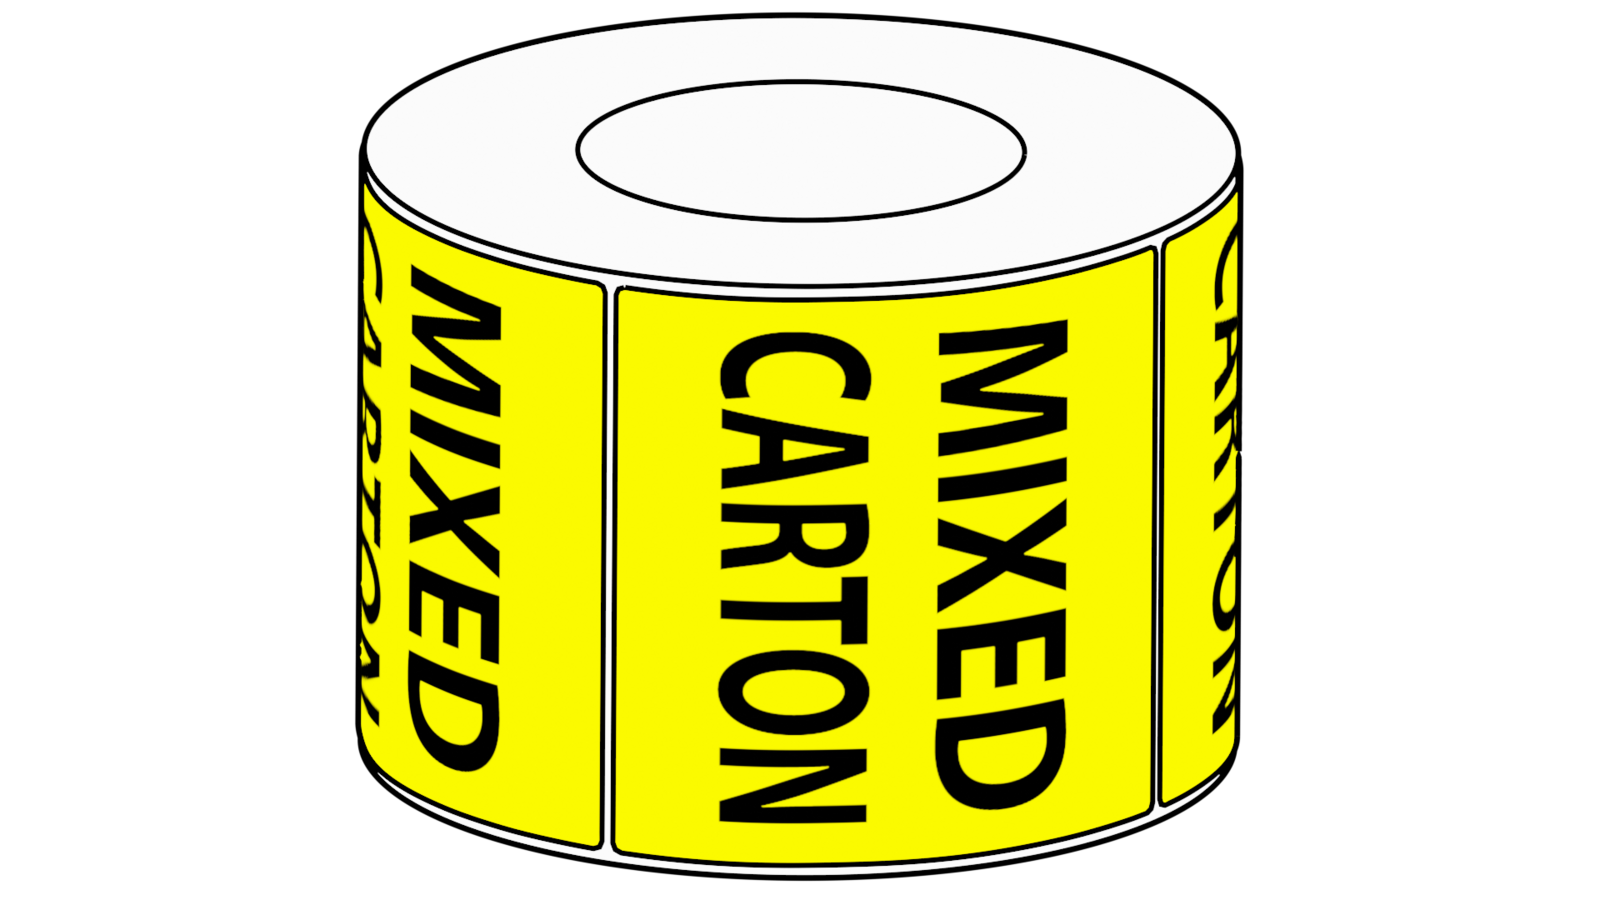 75x73mm Mixed Carton Label, 1000 per roll, 76mm core